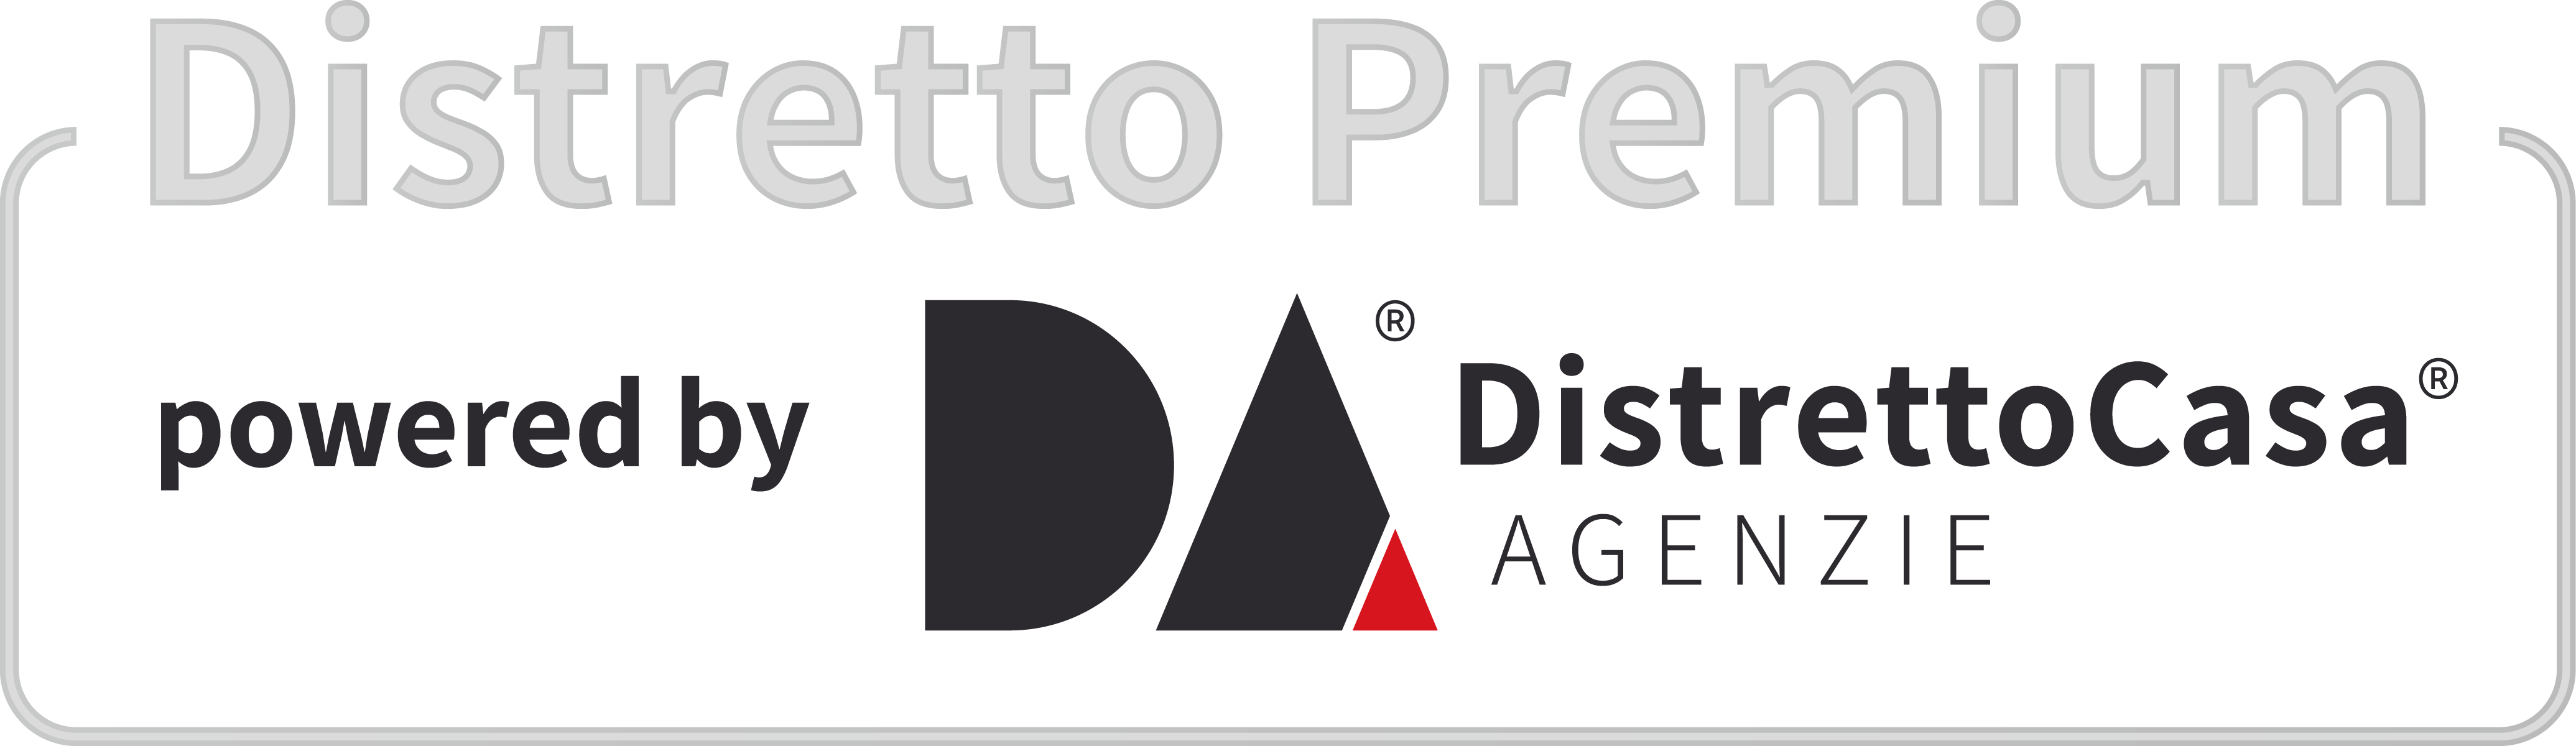 Distretto Premium - Distretto Casa Agenzie - 2